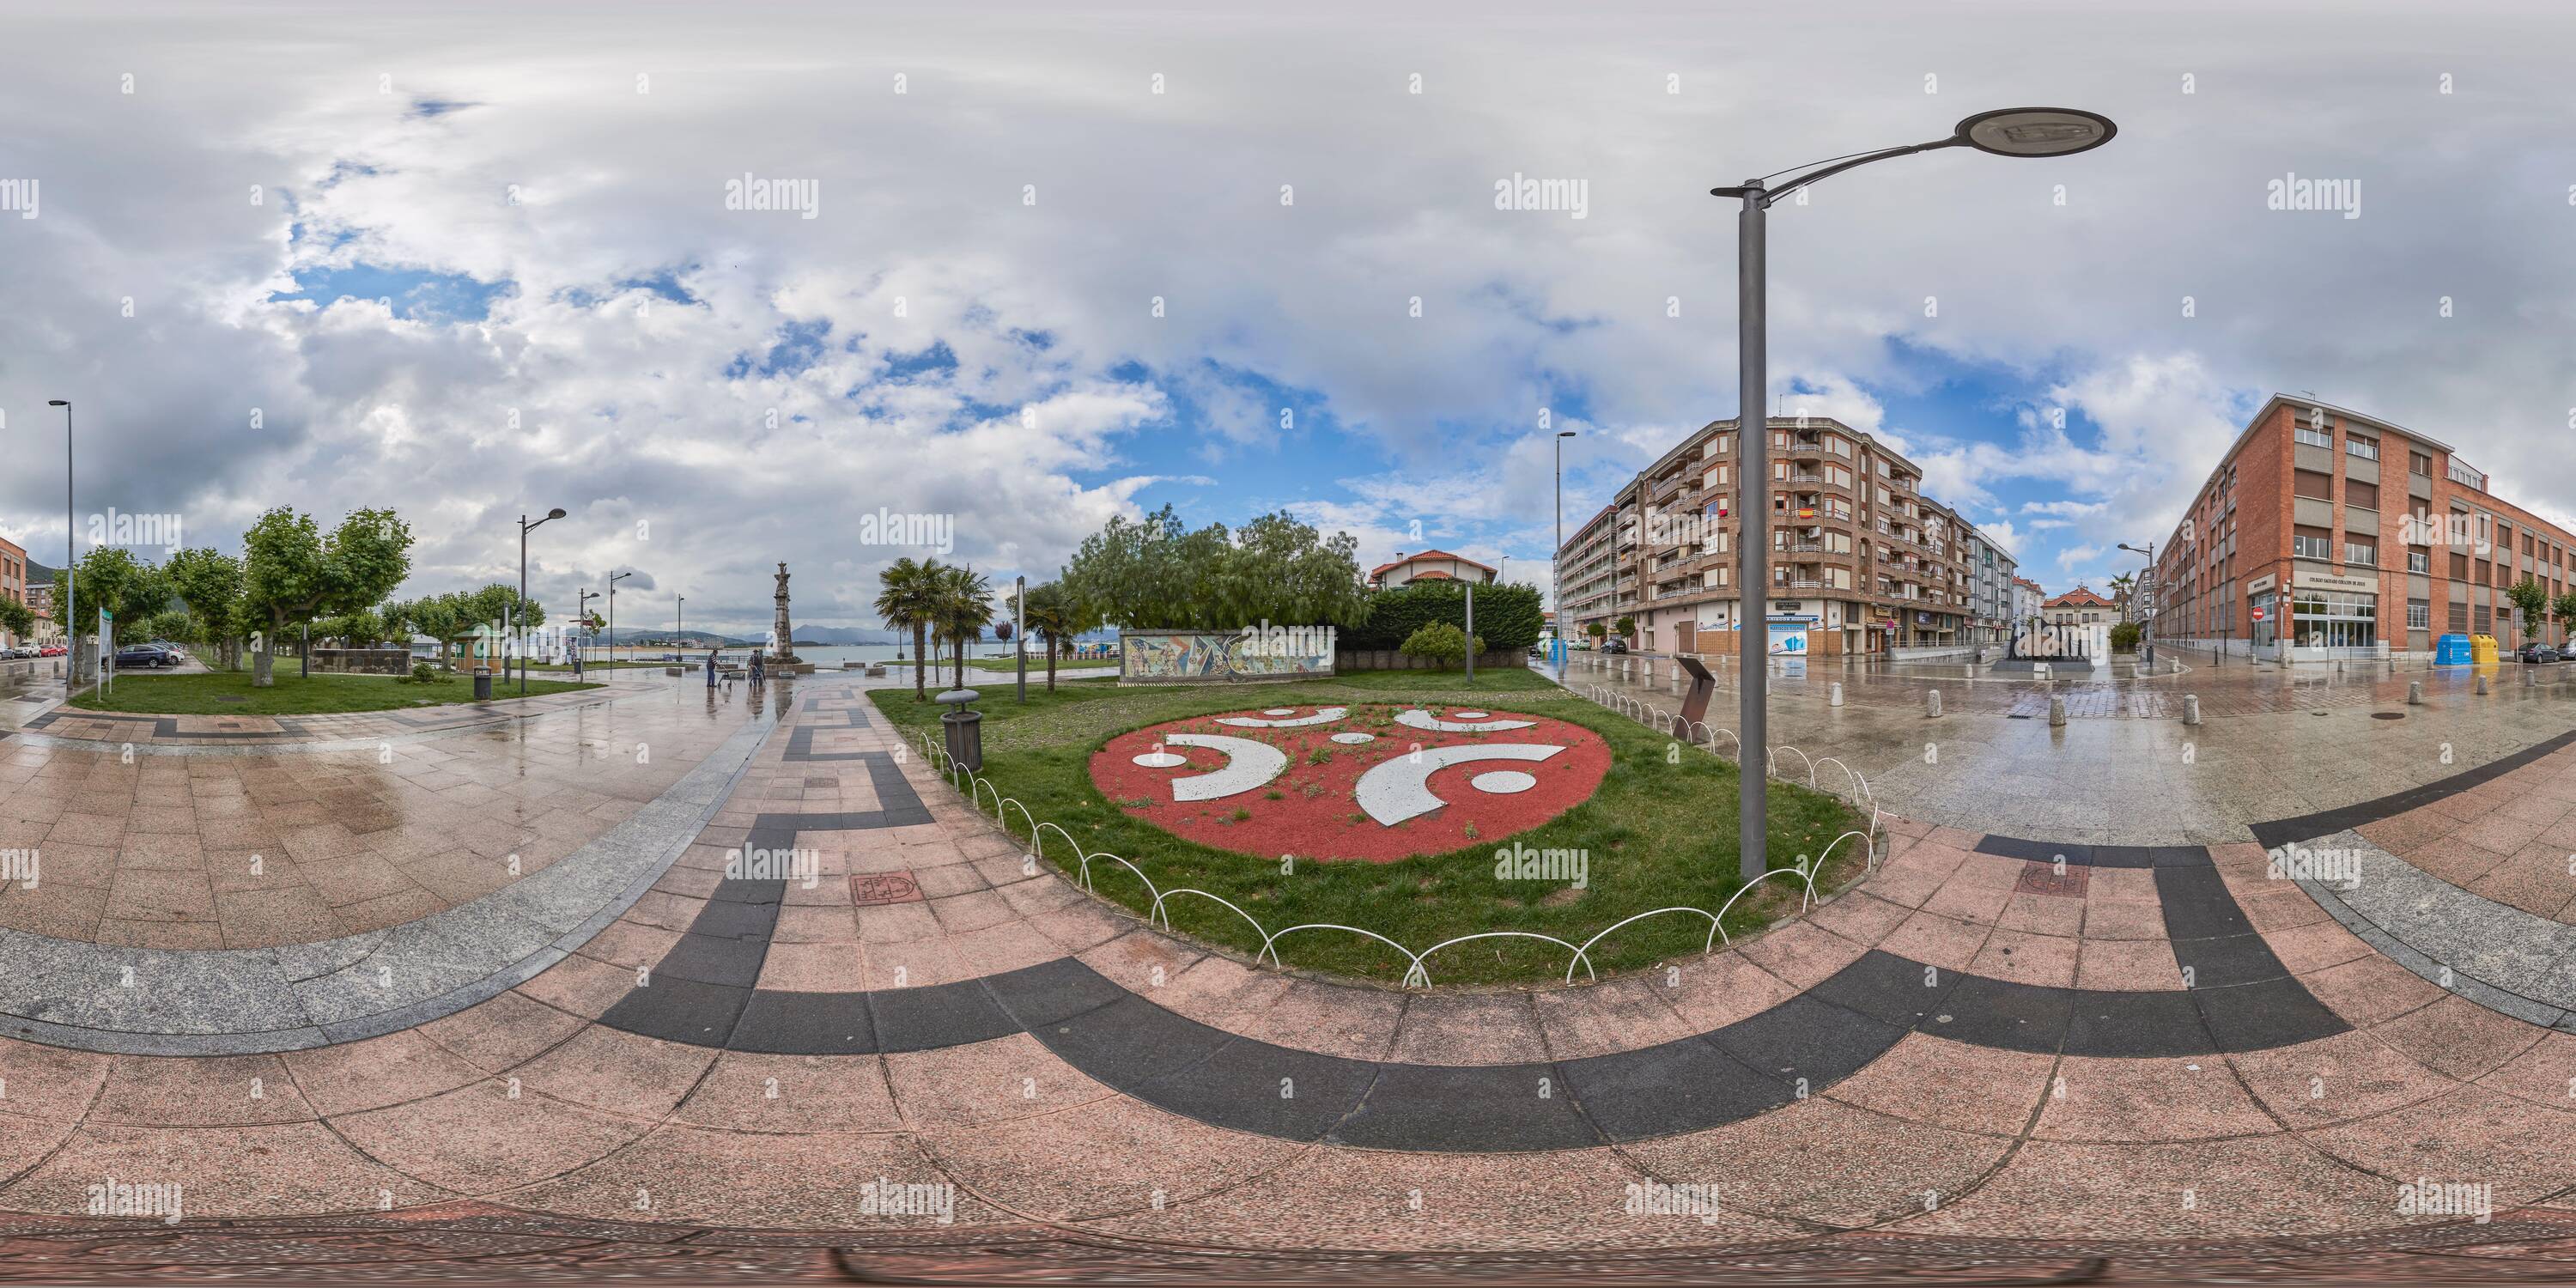 Visualizzazione panoramica a 360 gradi di 360 gradi panoramico: Monumento al Carnevale in Plaza de la Corcordia e Juan de la cosa sul lungomare di Santona, Cantabria, Spagna, Europa.